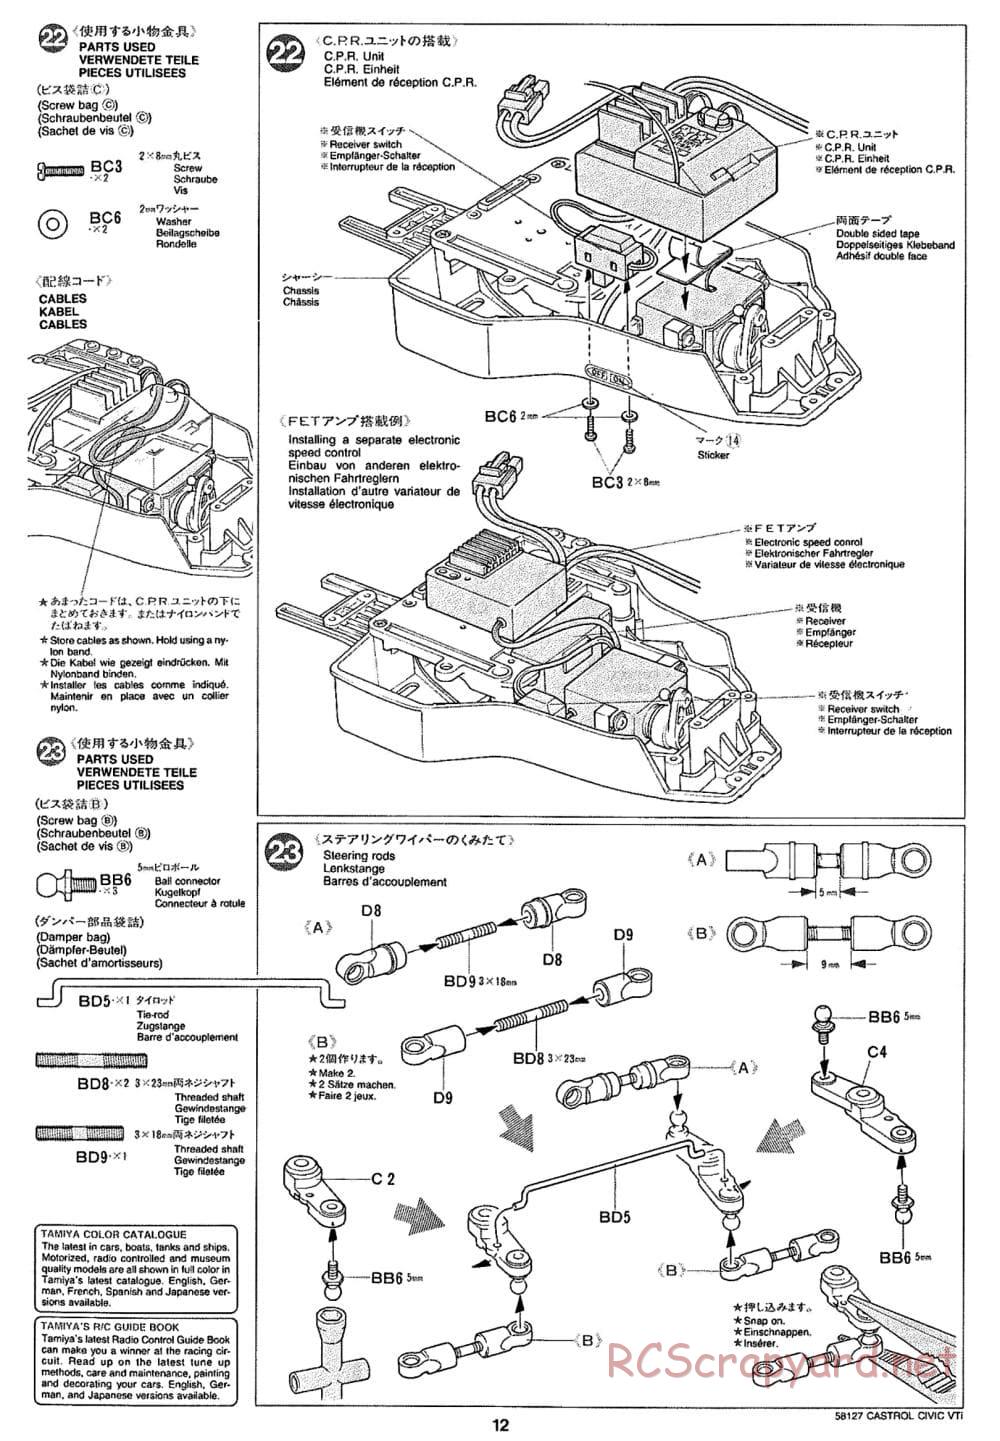 Tamiya - Castrol Honda Civic VTi - FF-01 Chassis - Manual - Page 12